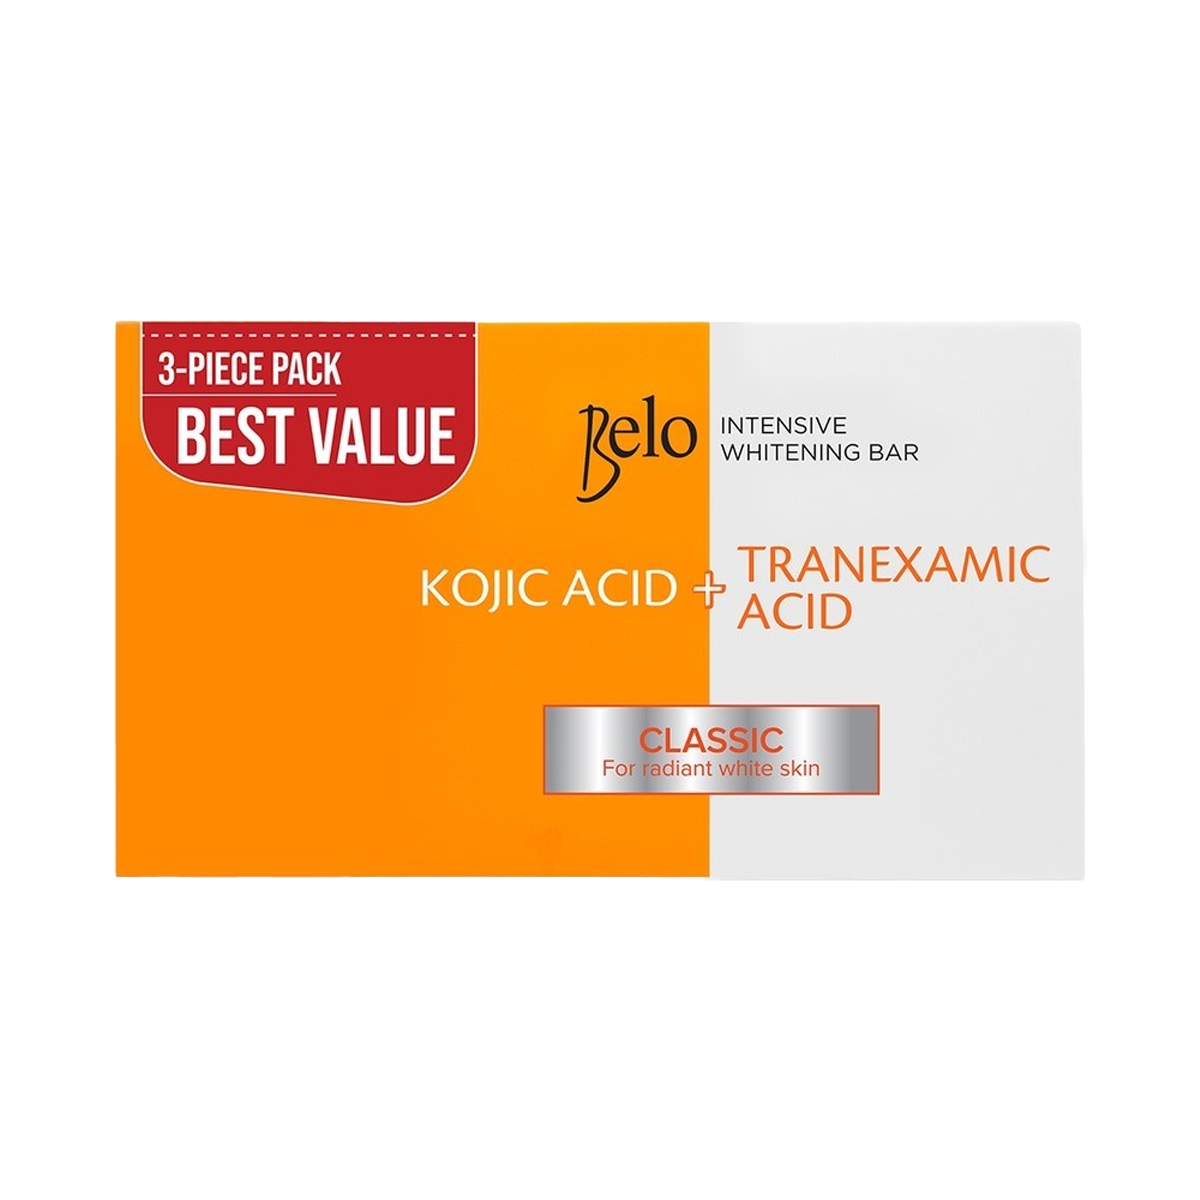 Belo Intensive Whitening Bar Kojic Acid + Tranexamic Acid Classic (3-pc Bundle)